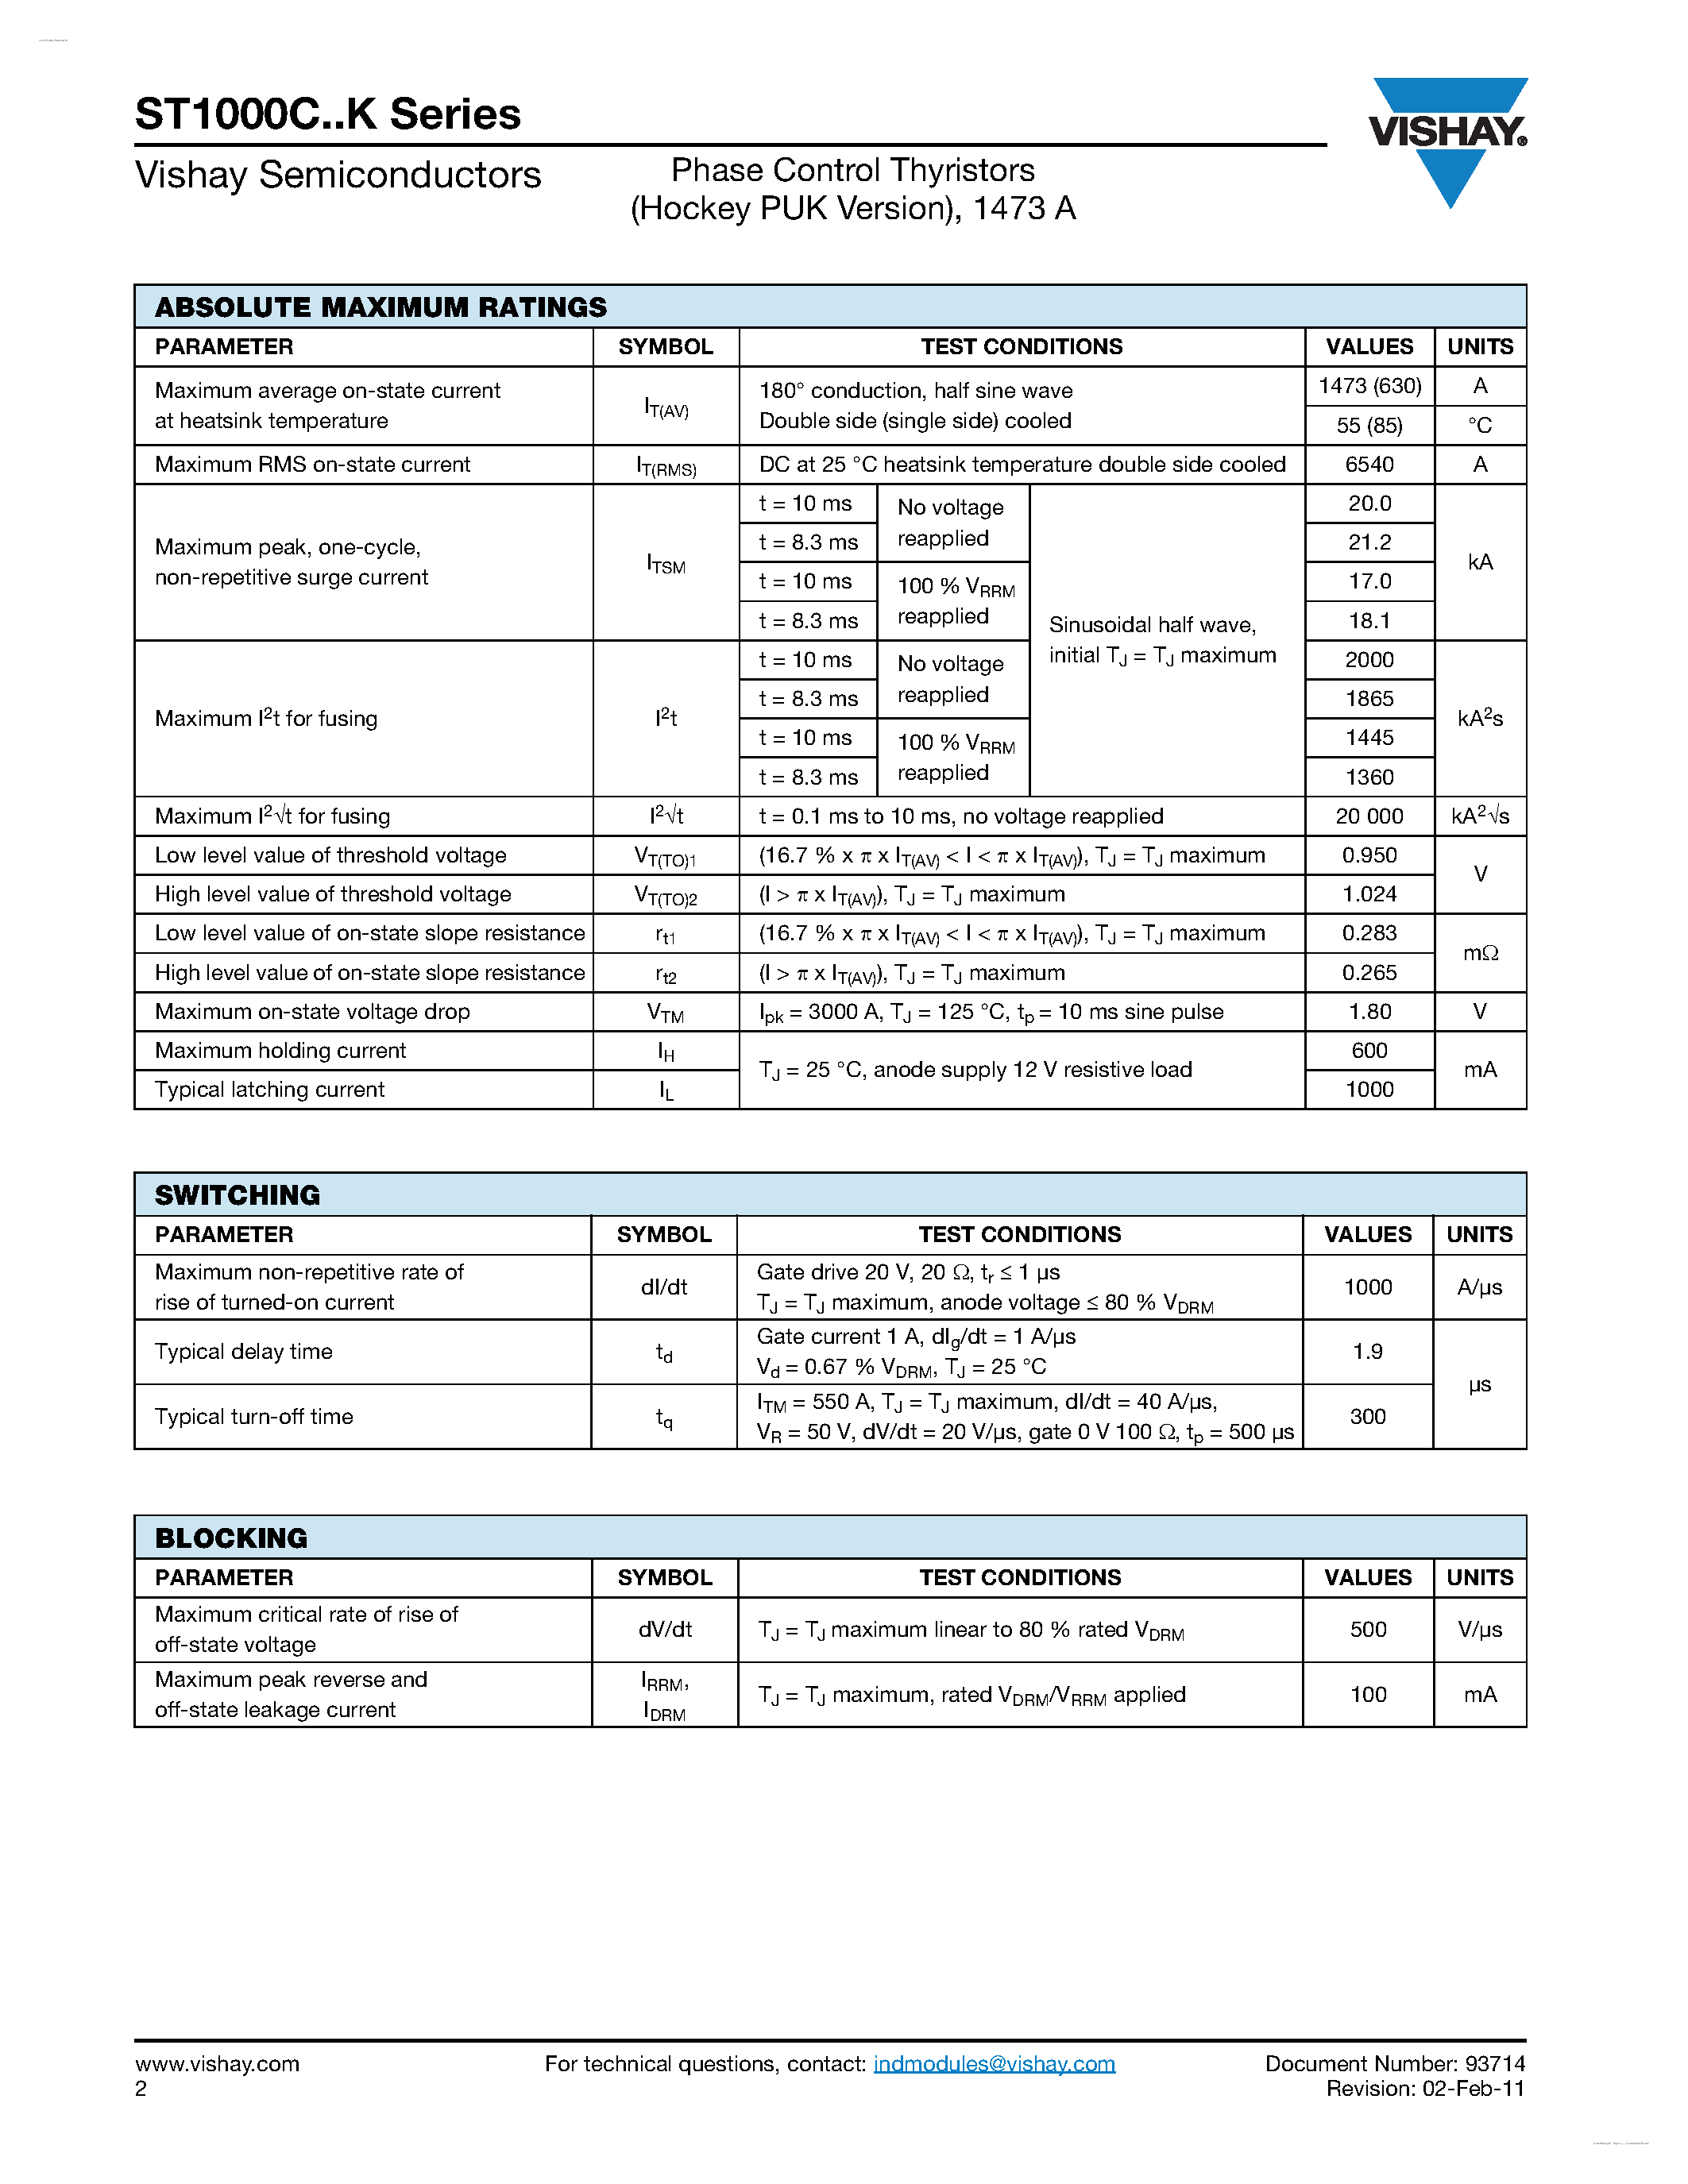 Datasheet ST1000C12K - (ST1000CxxK) Phase Control Thyristors page 2